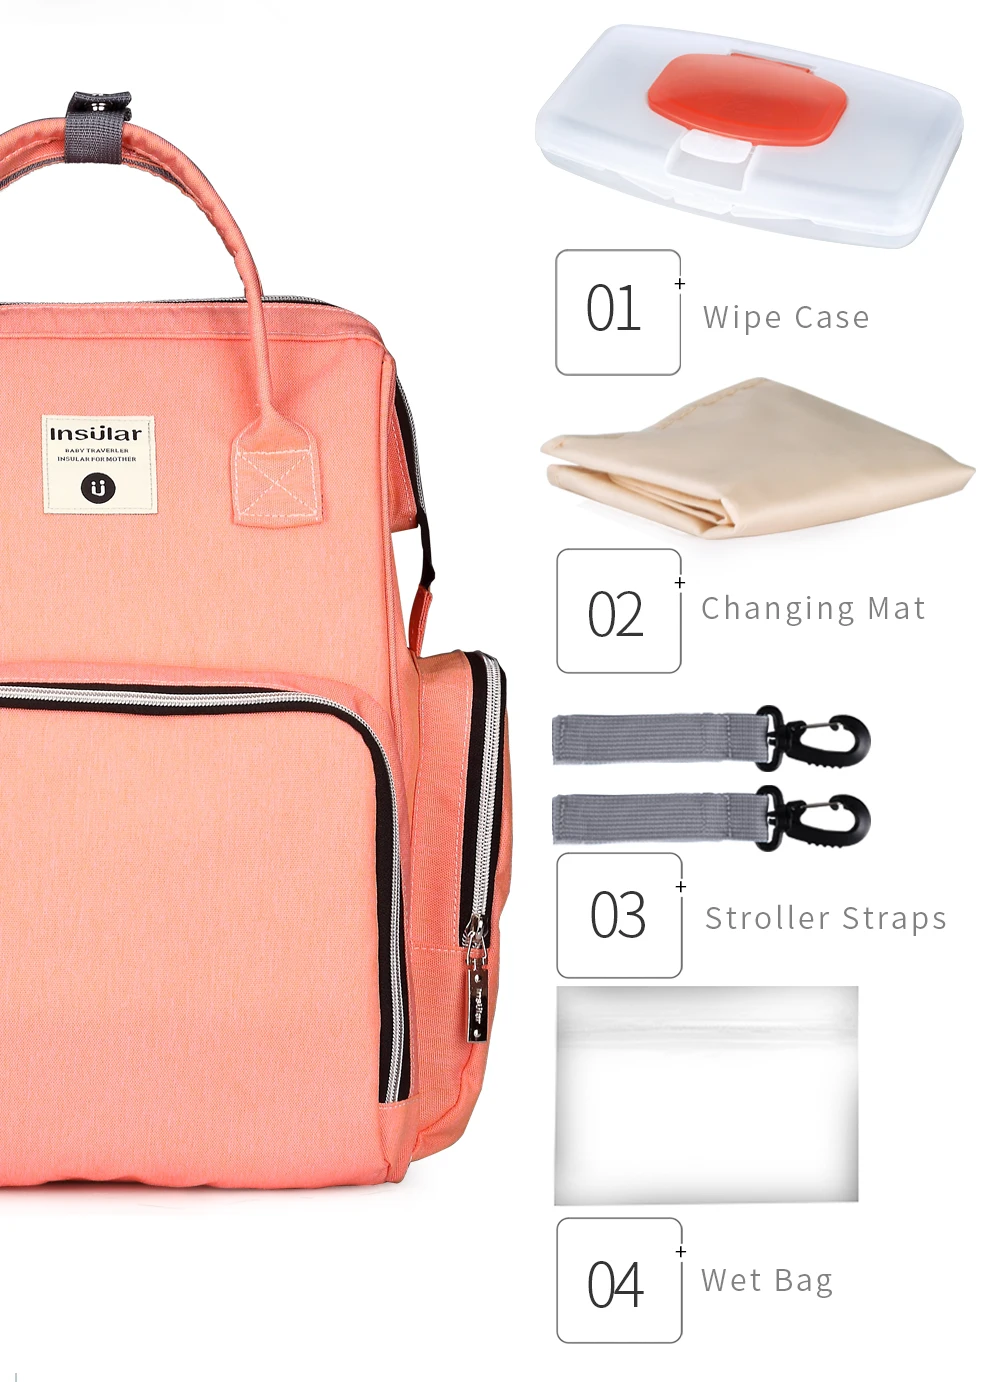 Новая мода Мумия материнства подгузник рюкзак мешок большой Ёмкость для мамы Многофункциональный Открытый Путешествия Пеленки сумки для